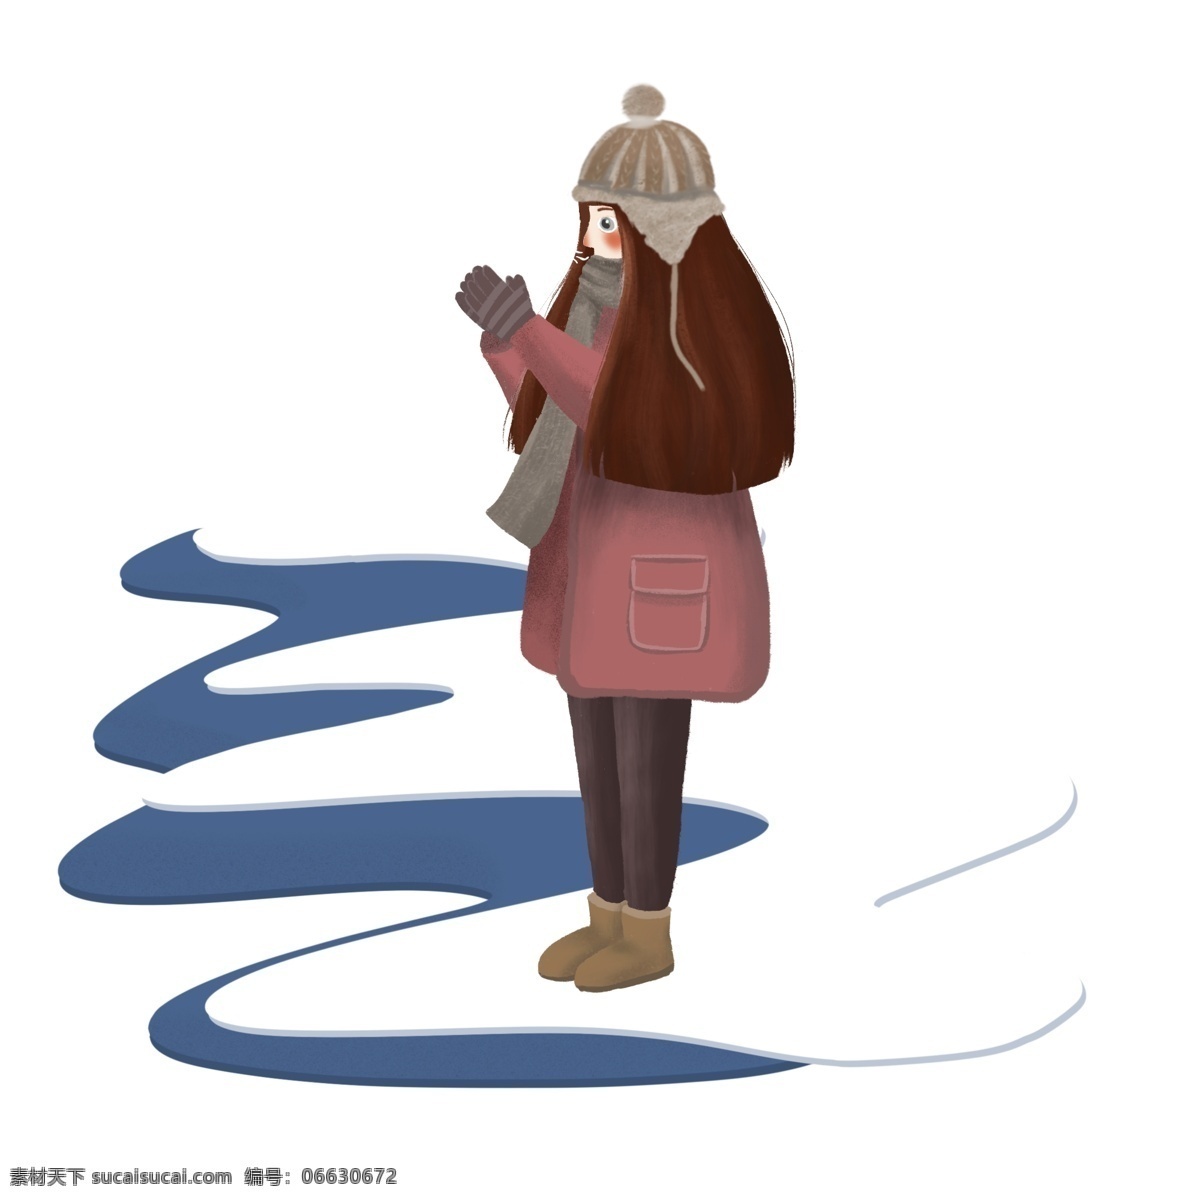 冬季 卡通 人物 手绘 保暖 积雪 围巾 女孩 长发 手套 可爱 冬天 雪地靴 帽子 哈气 取暖